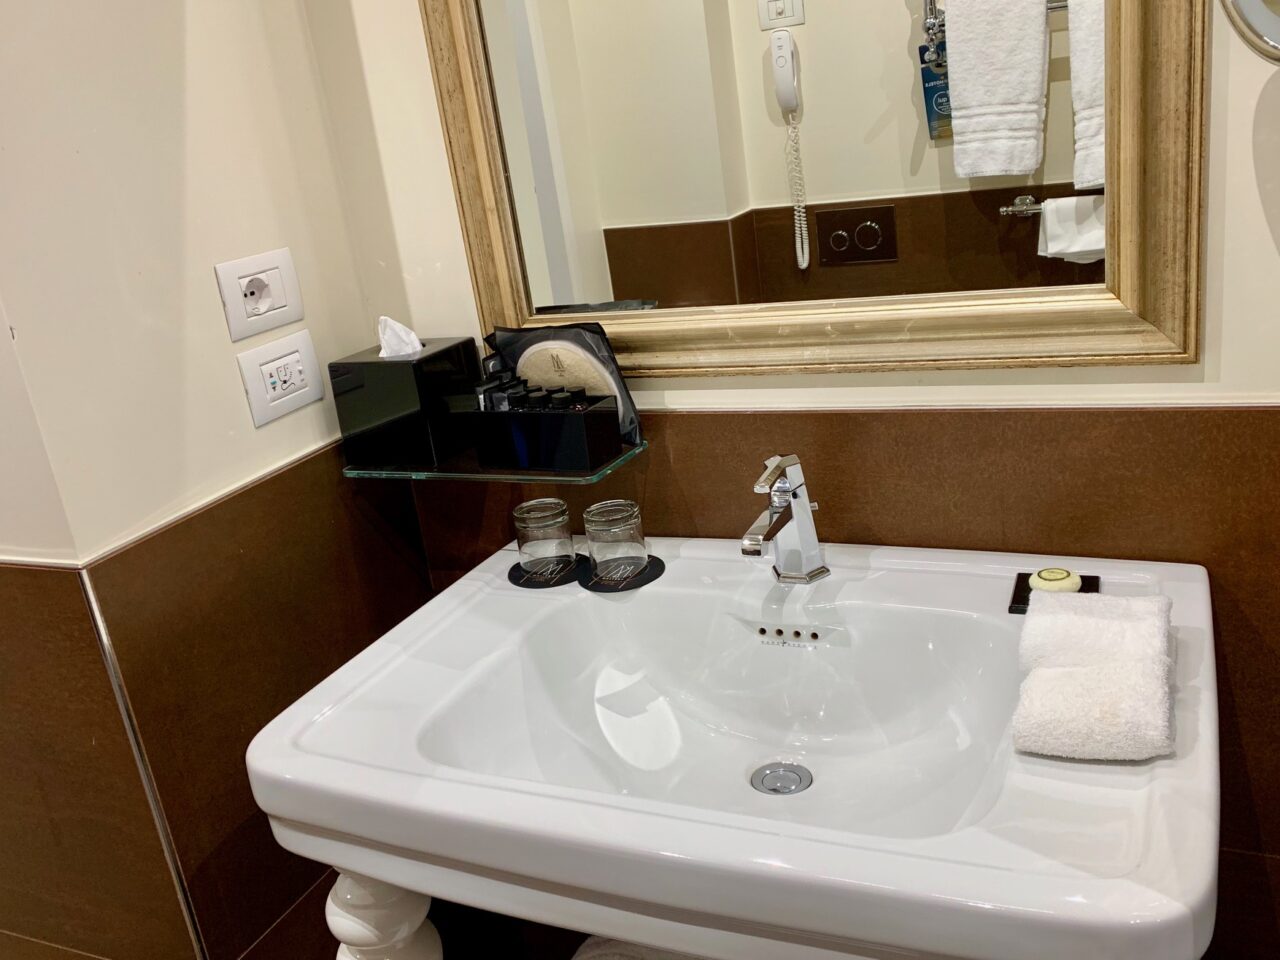 Papadopoli M Gallery Hotel Bathroom Sink